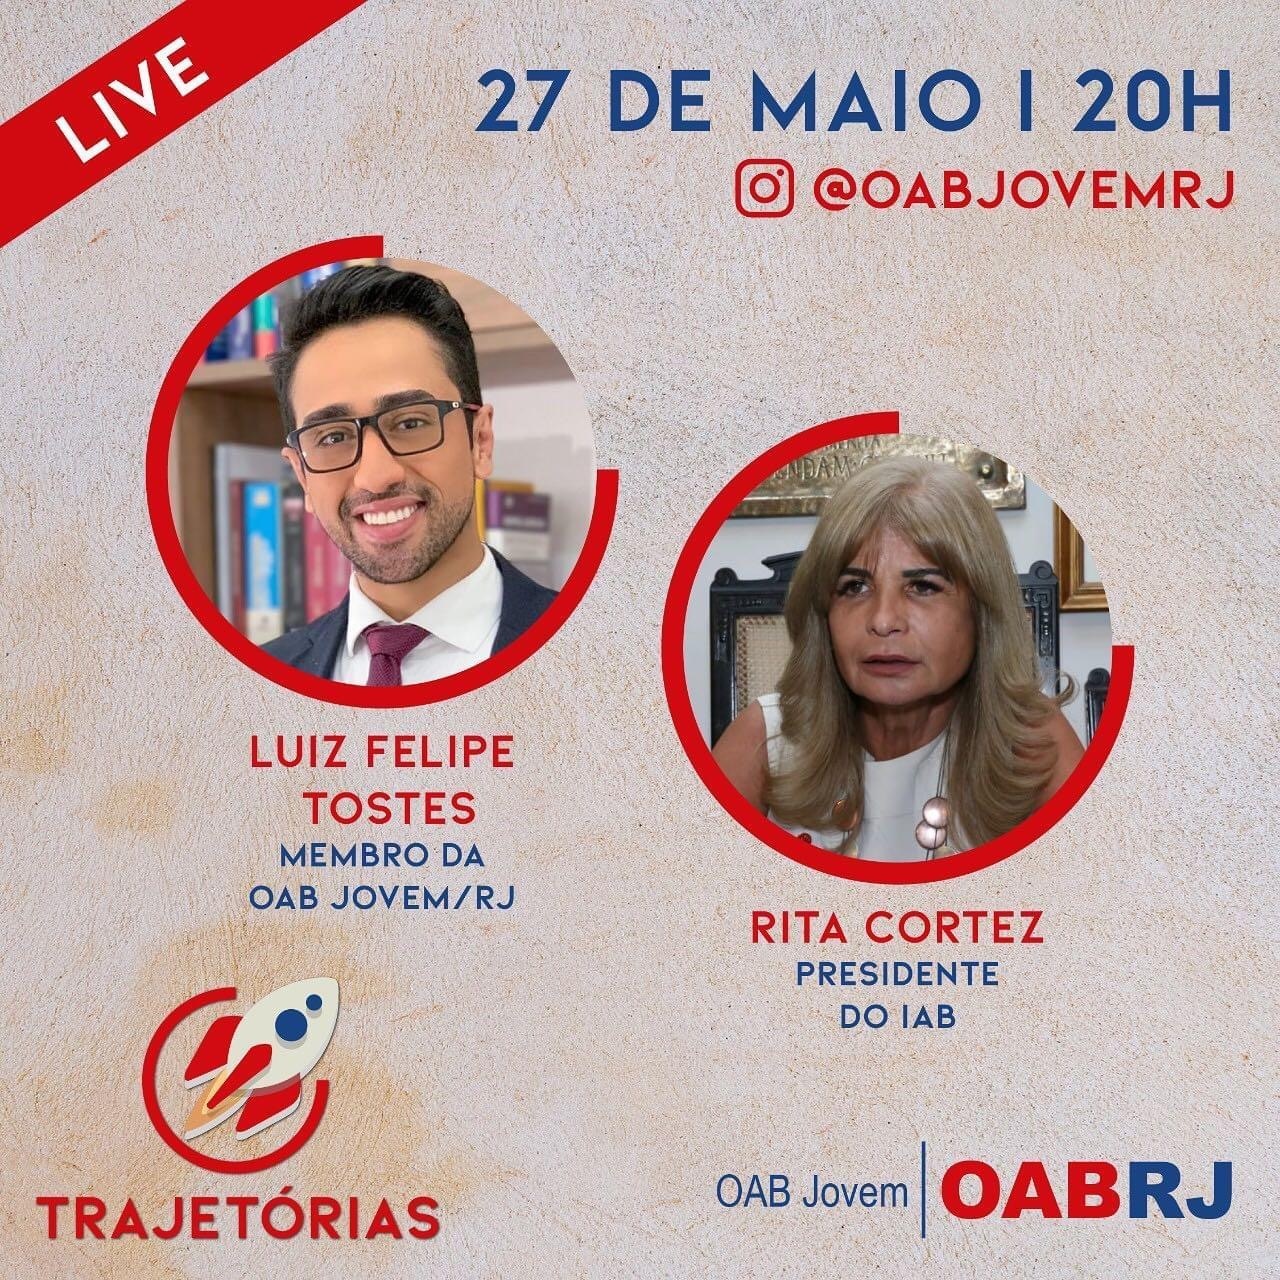 Rita Cortez participará de live no Instagram da OAB/Jovem nesta quarta-feira (27/5), às 20h